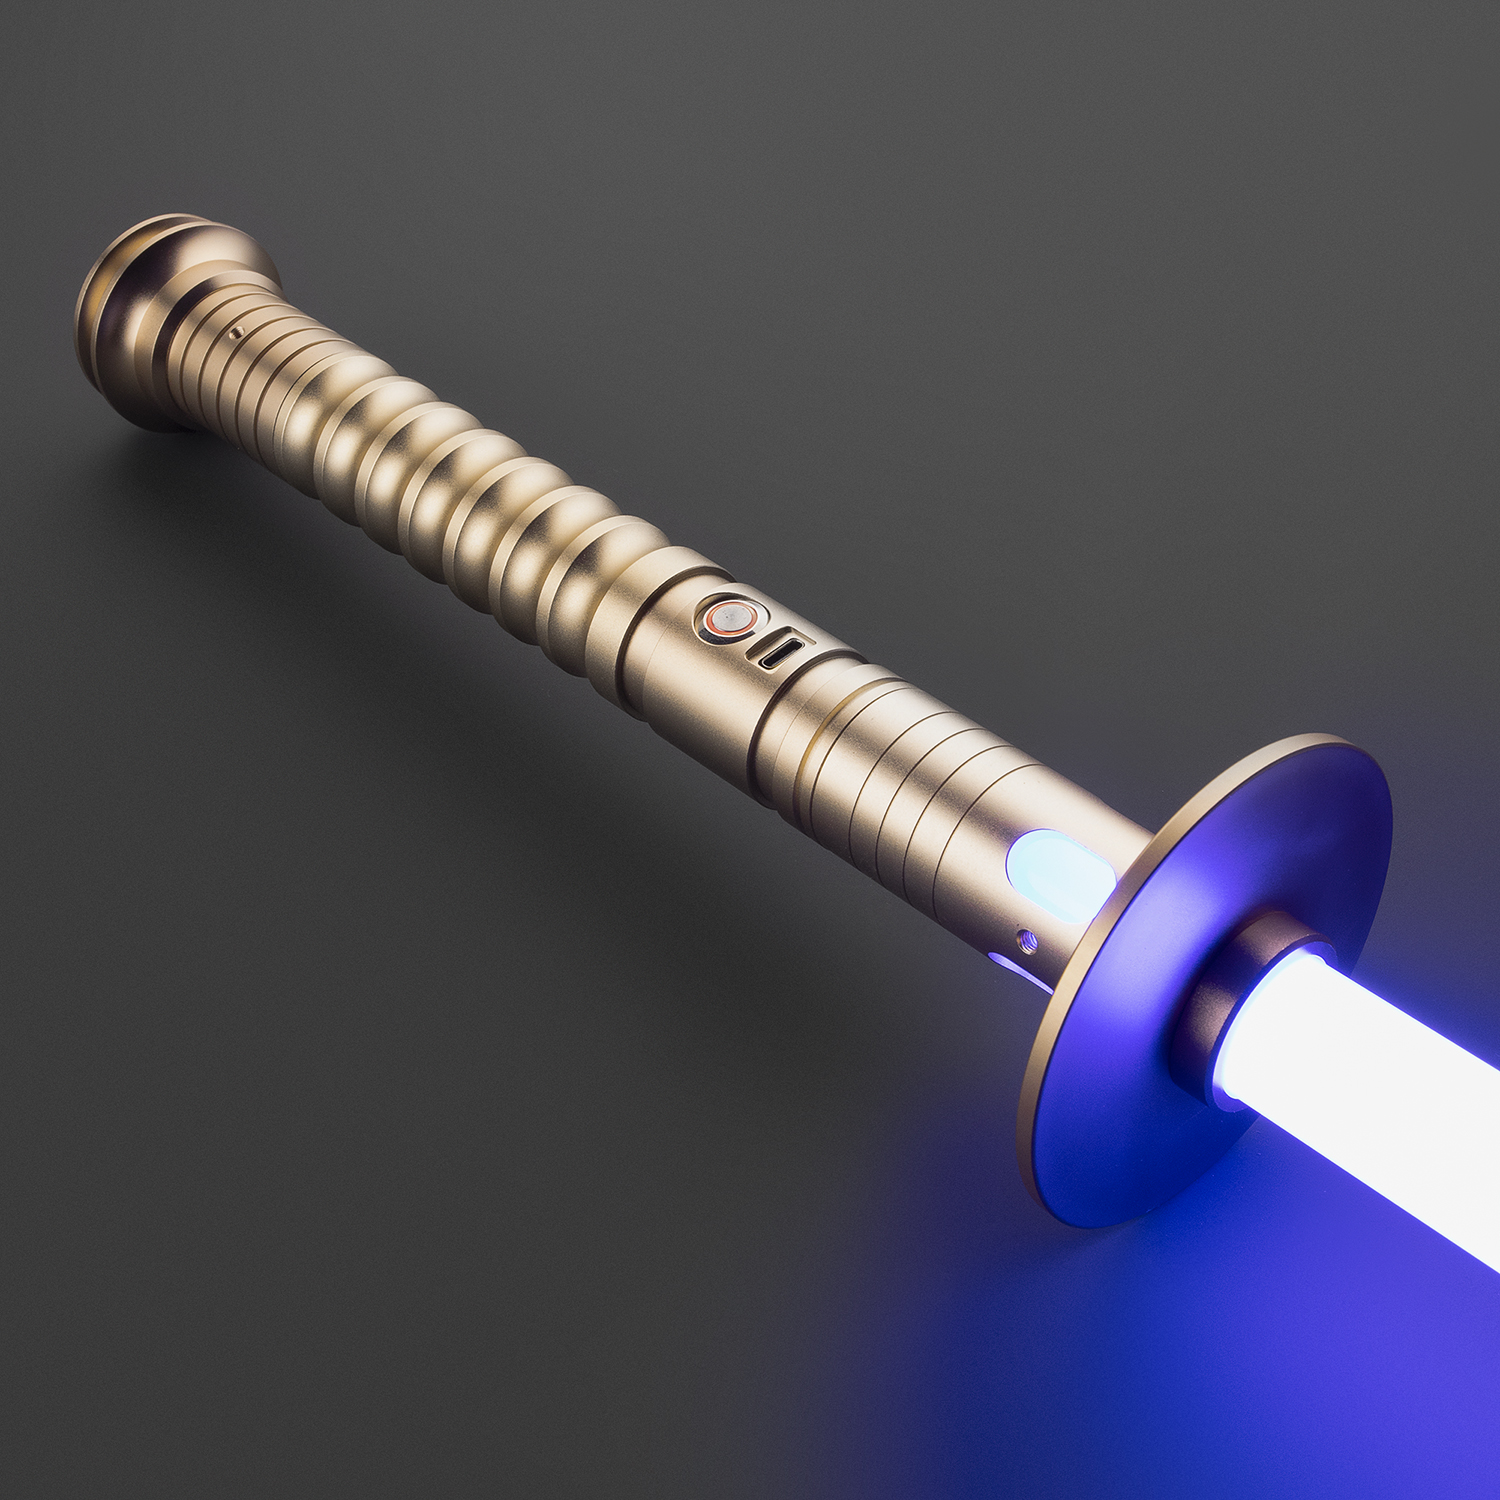 Empire Sword neopixel lightsaber